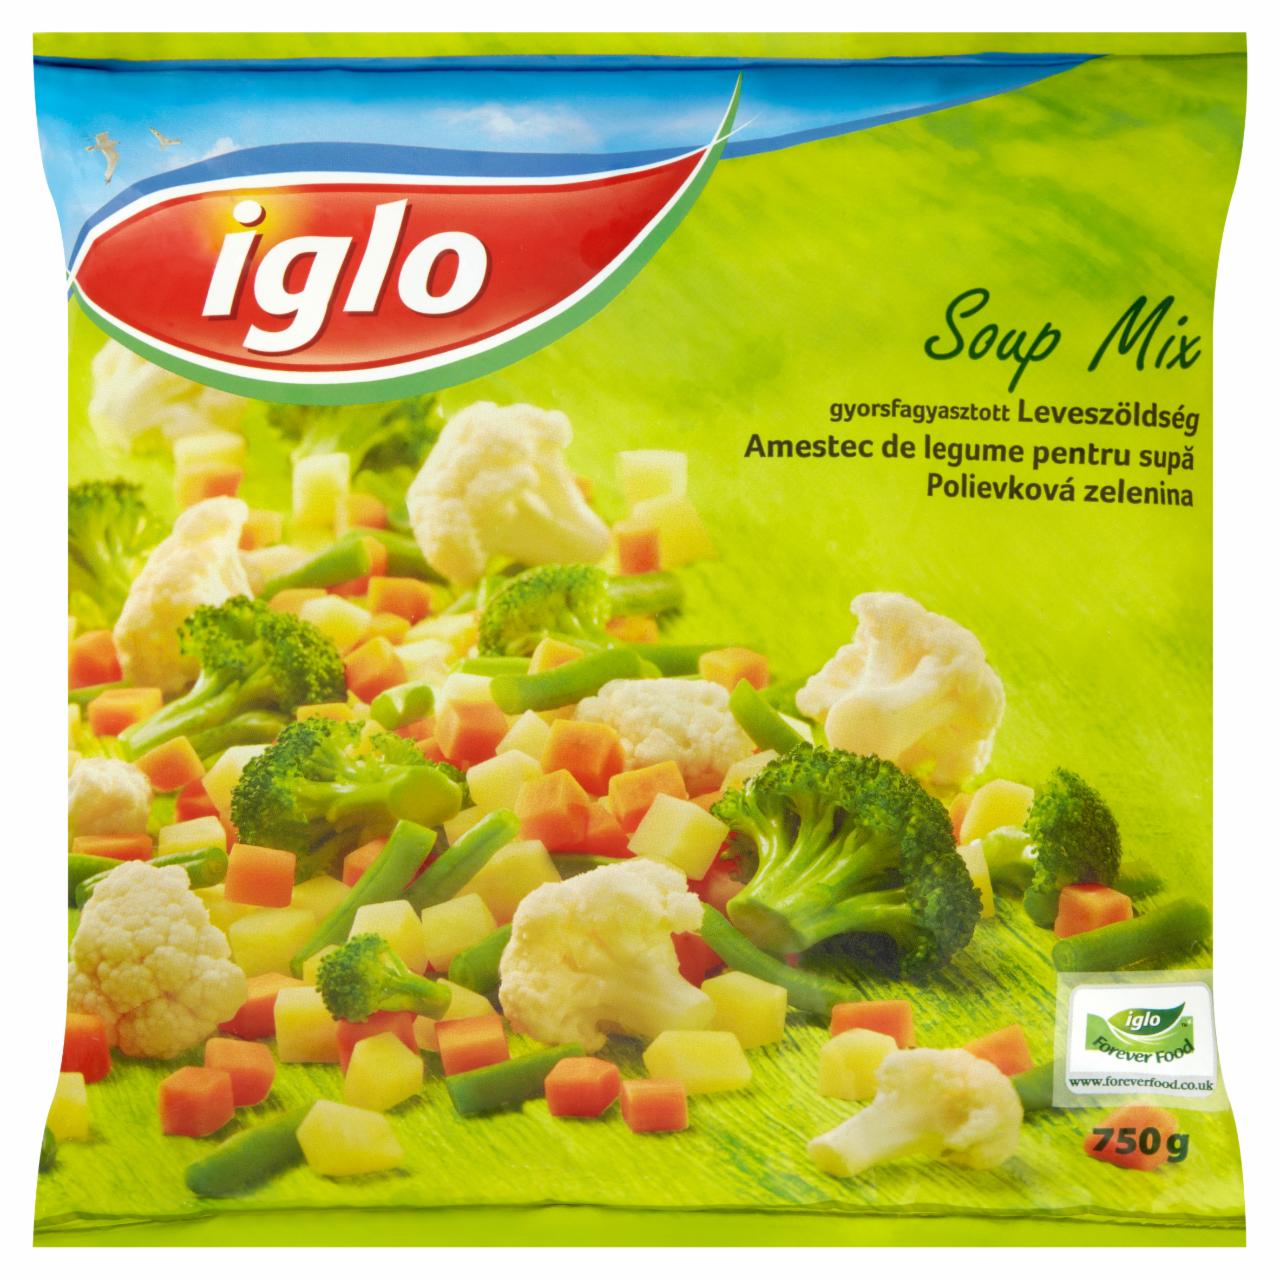 Képek - Iglo gyorsfagyasztott leveszöldség 750 g